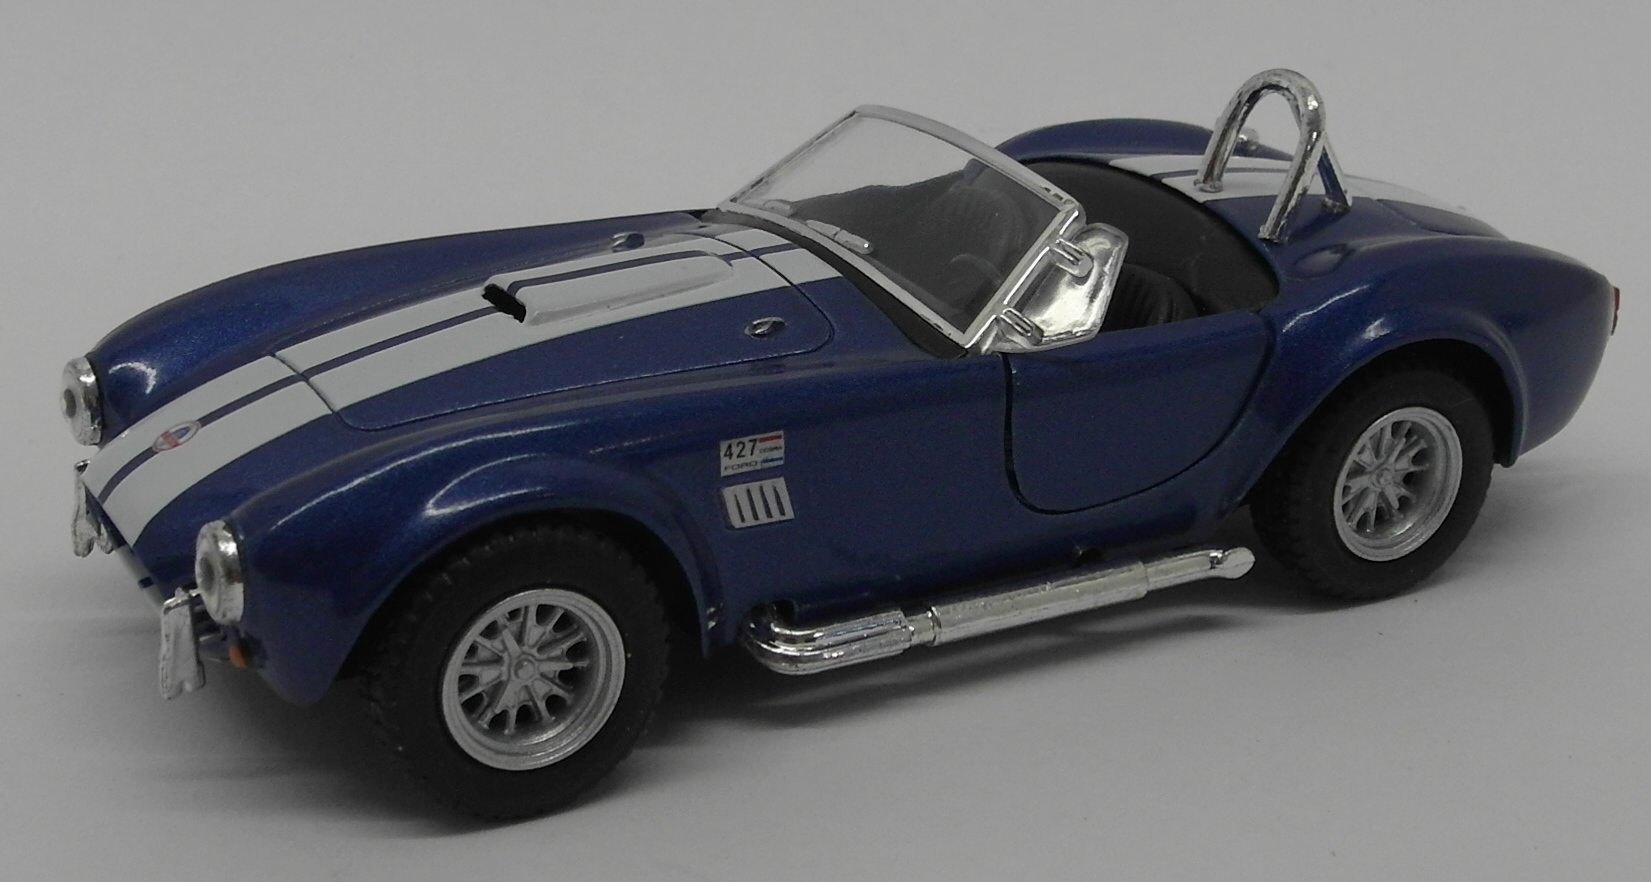 1965 Shelby Cobra 427 S/C - Blue - Kinsmart Pull Back & Go Diecast Metal Model